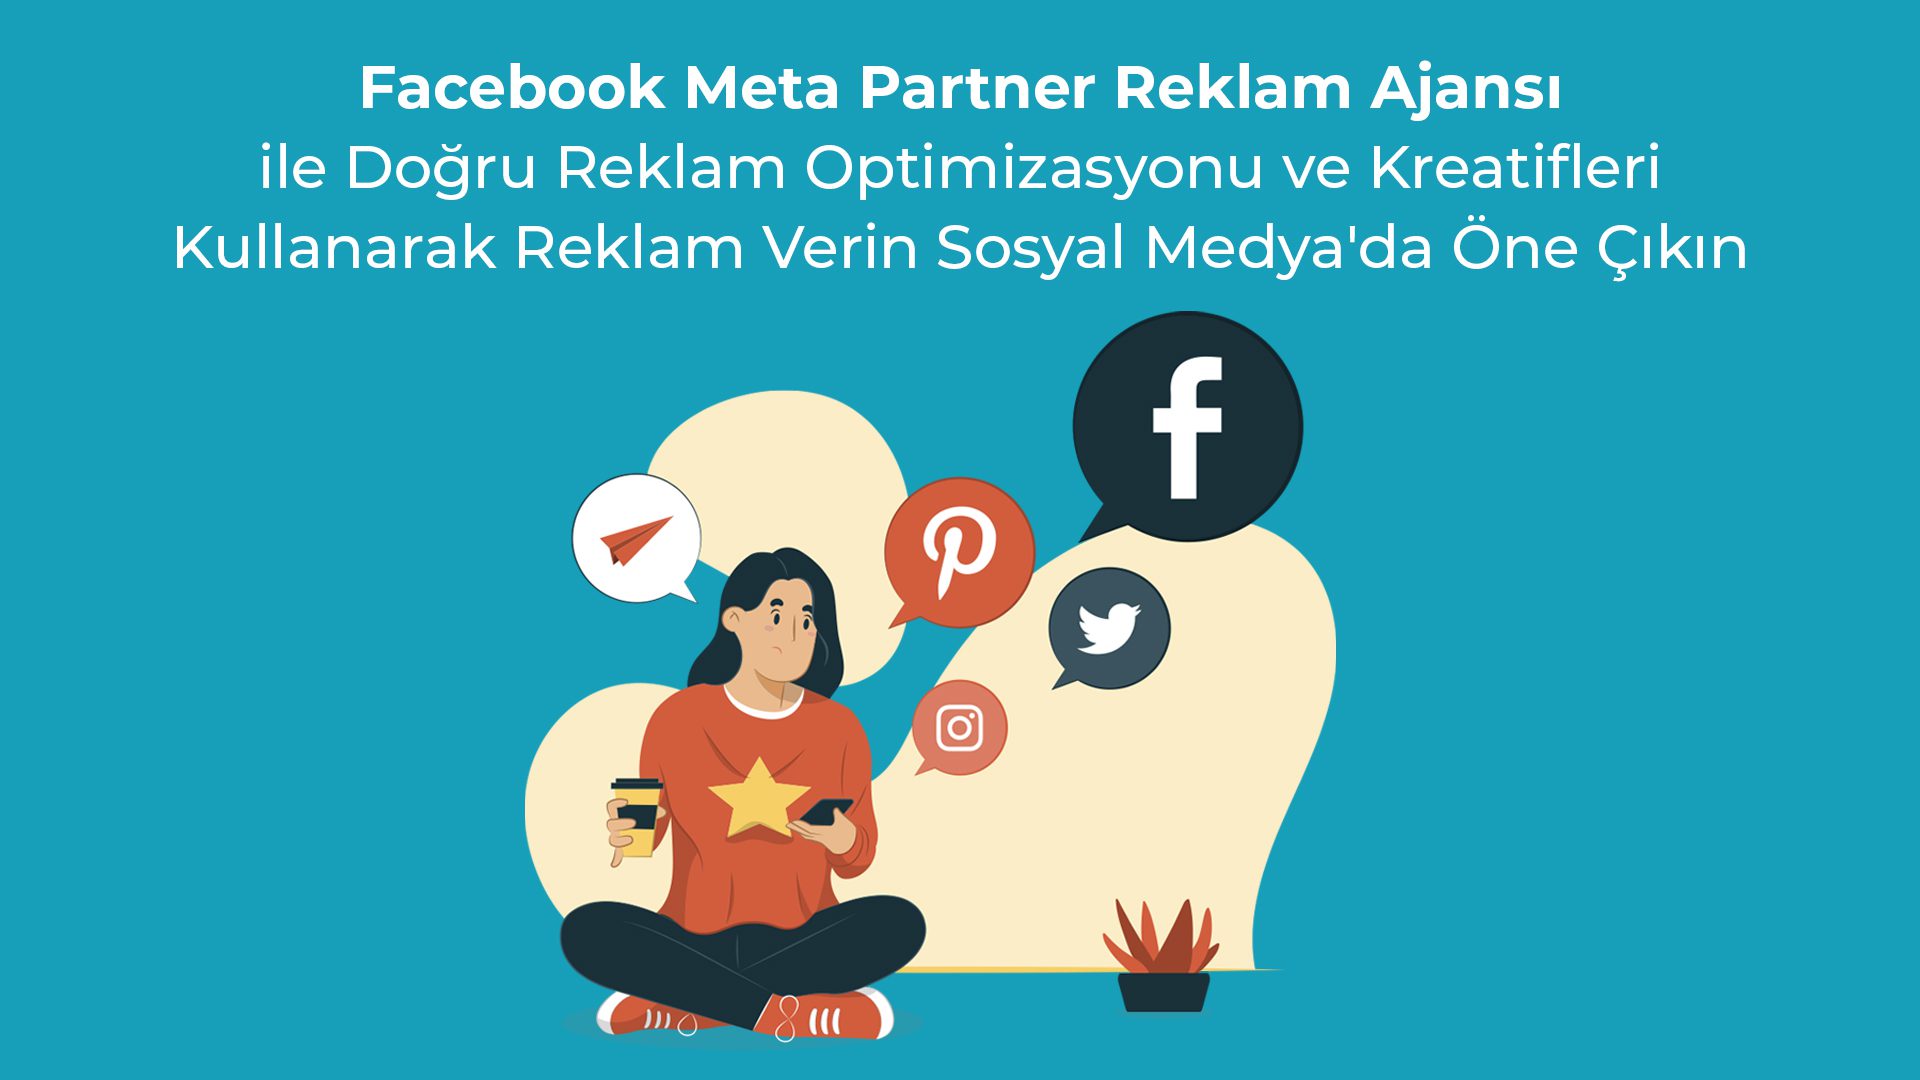 Facebook Meta Partner Reklam Ajansi ile Dogru Reklam Optimizasyonu ve Kreatifleri Kullanarak Reklam Verin Sosyal Medyada One Cikin